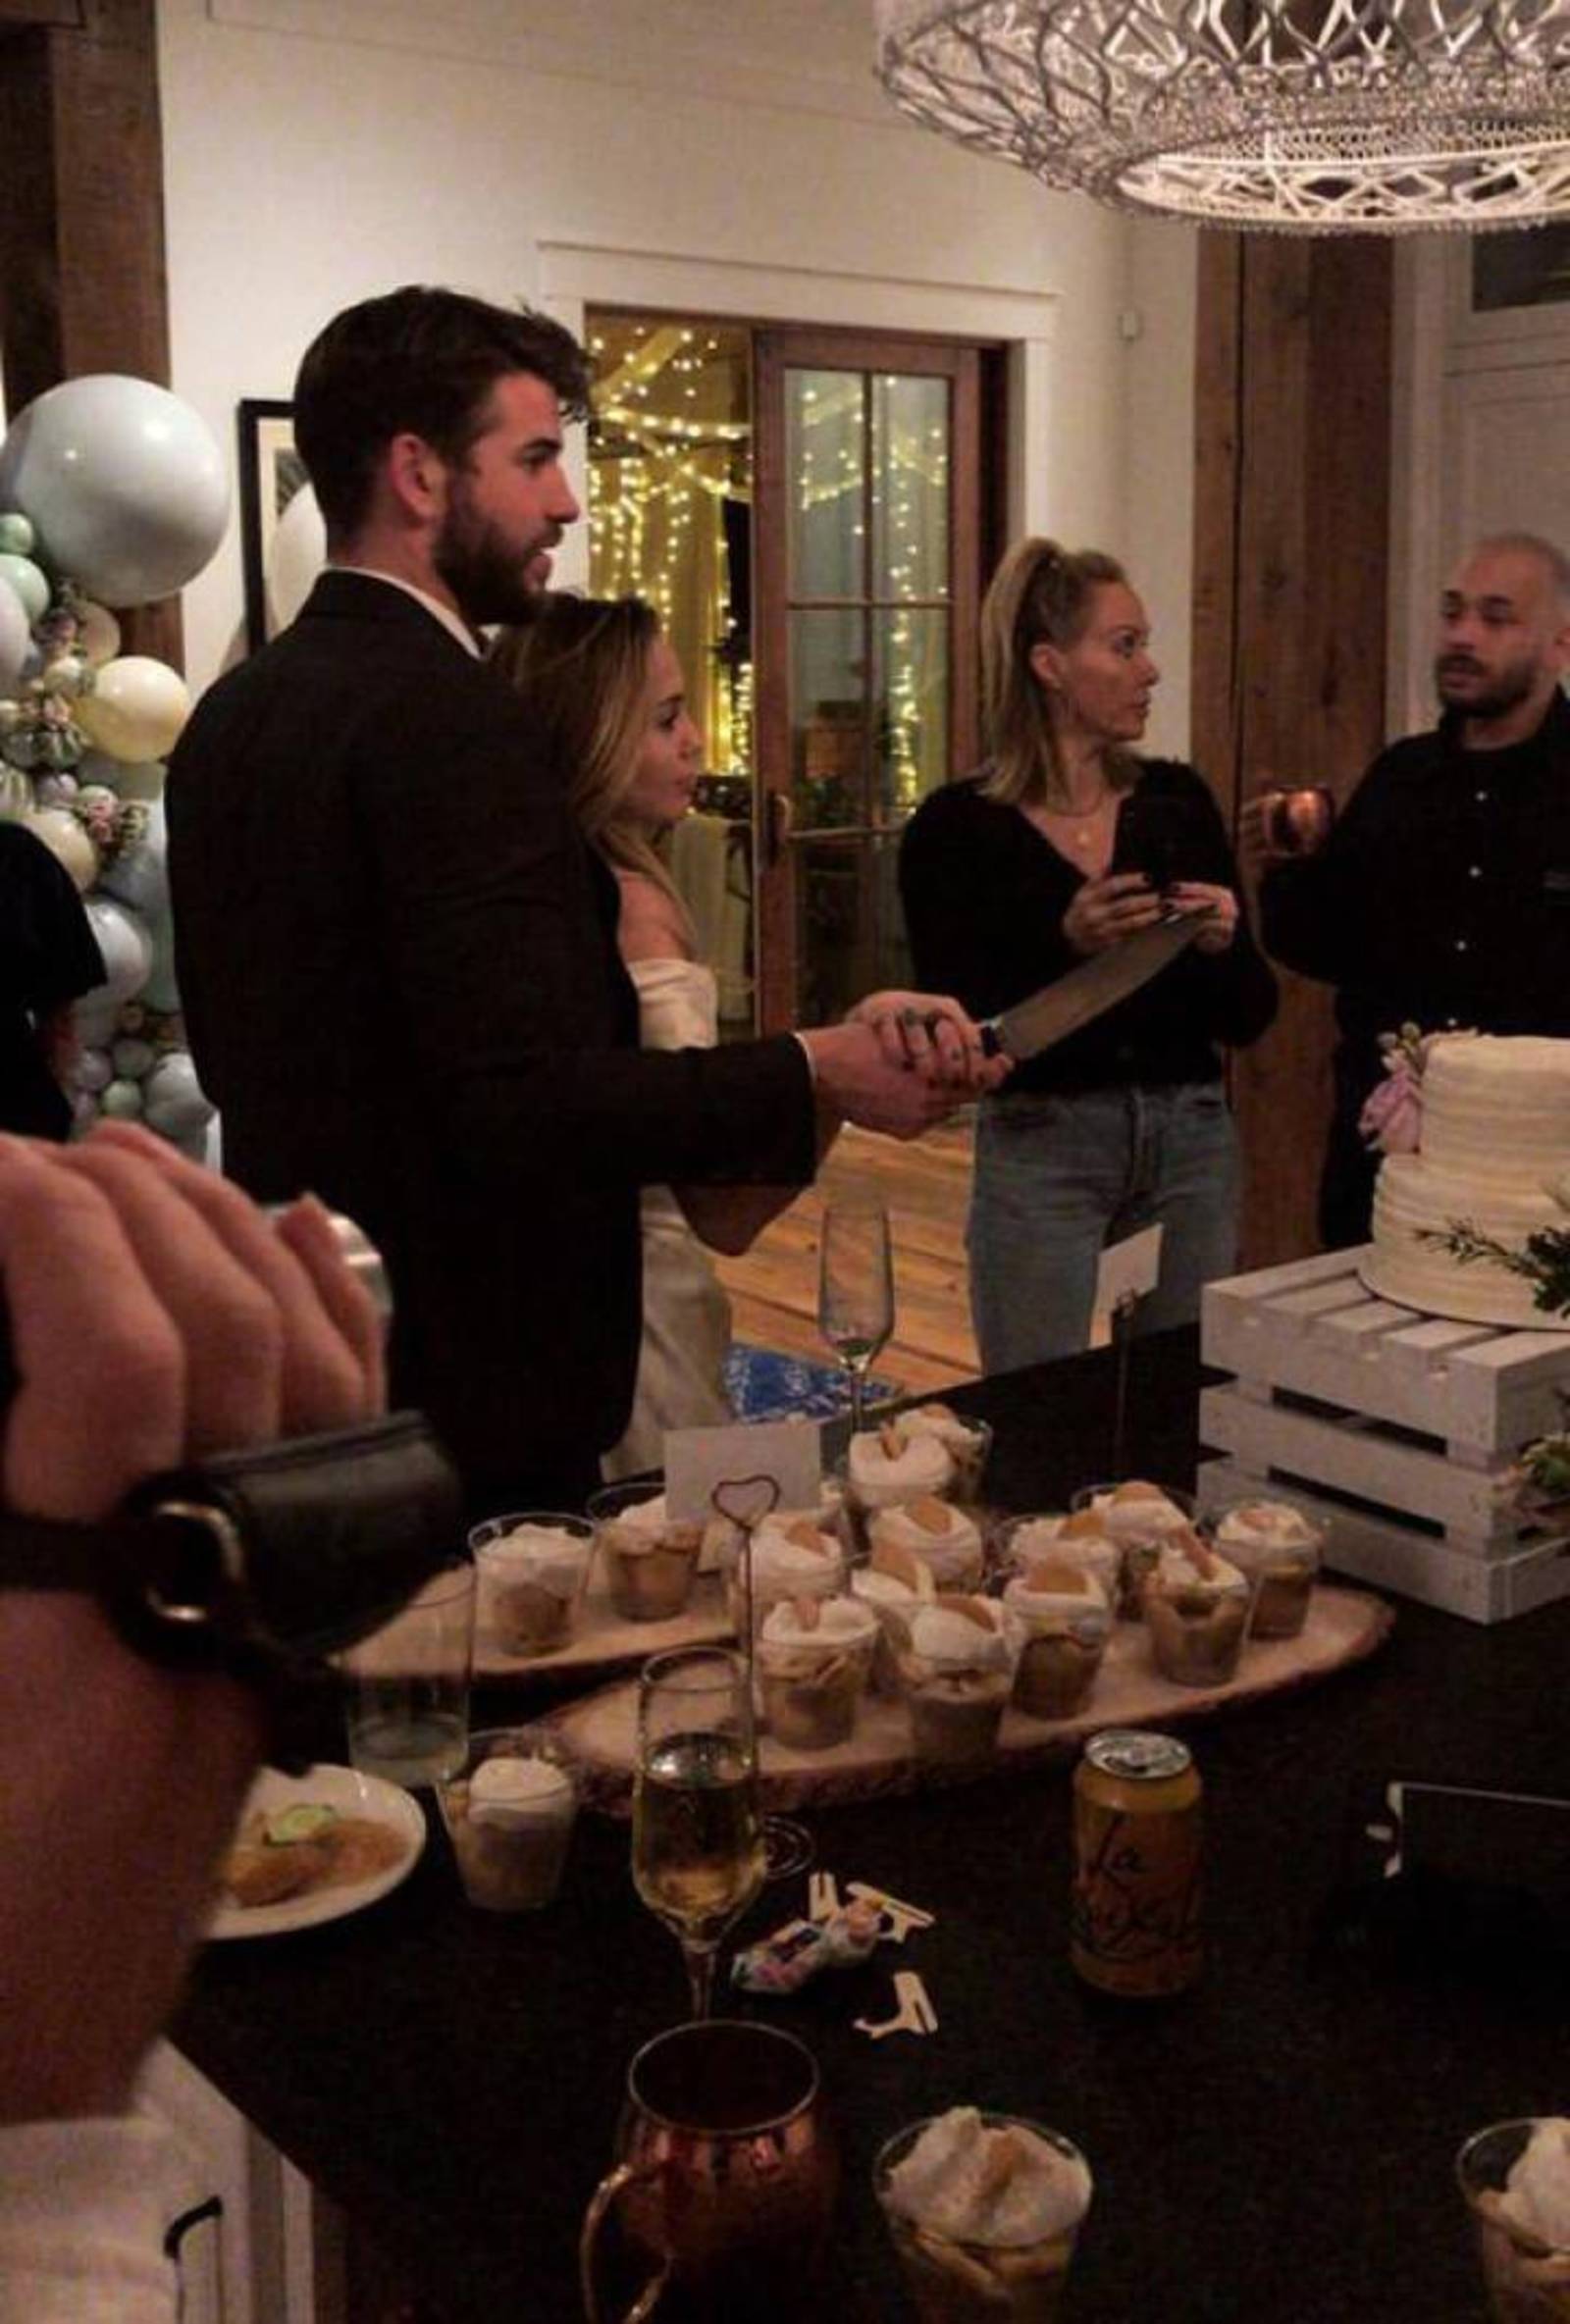 Se dan el sí. La foto que se publicó en Instagram donde se ve a Liam Hemsworth y Miley Cyrus cortando el pastel.